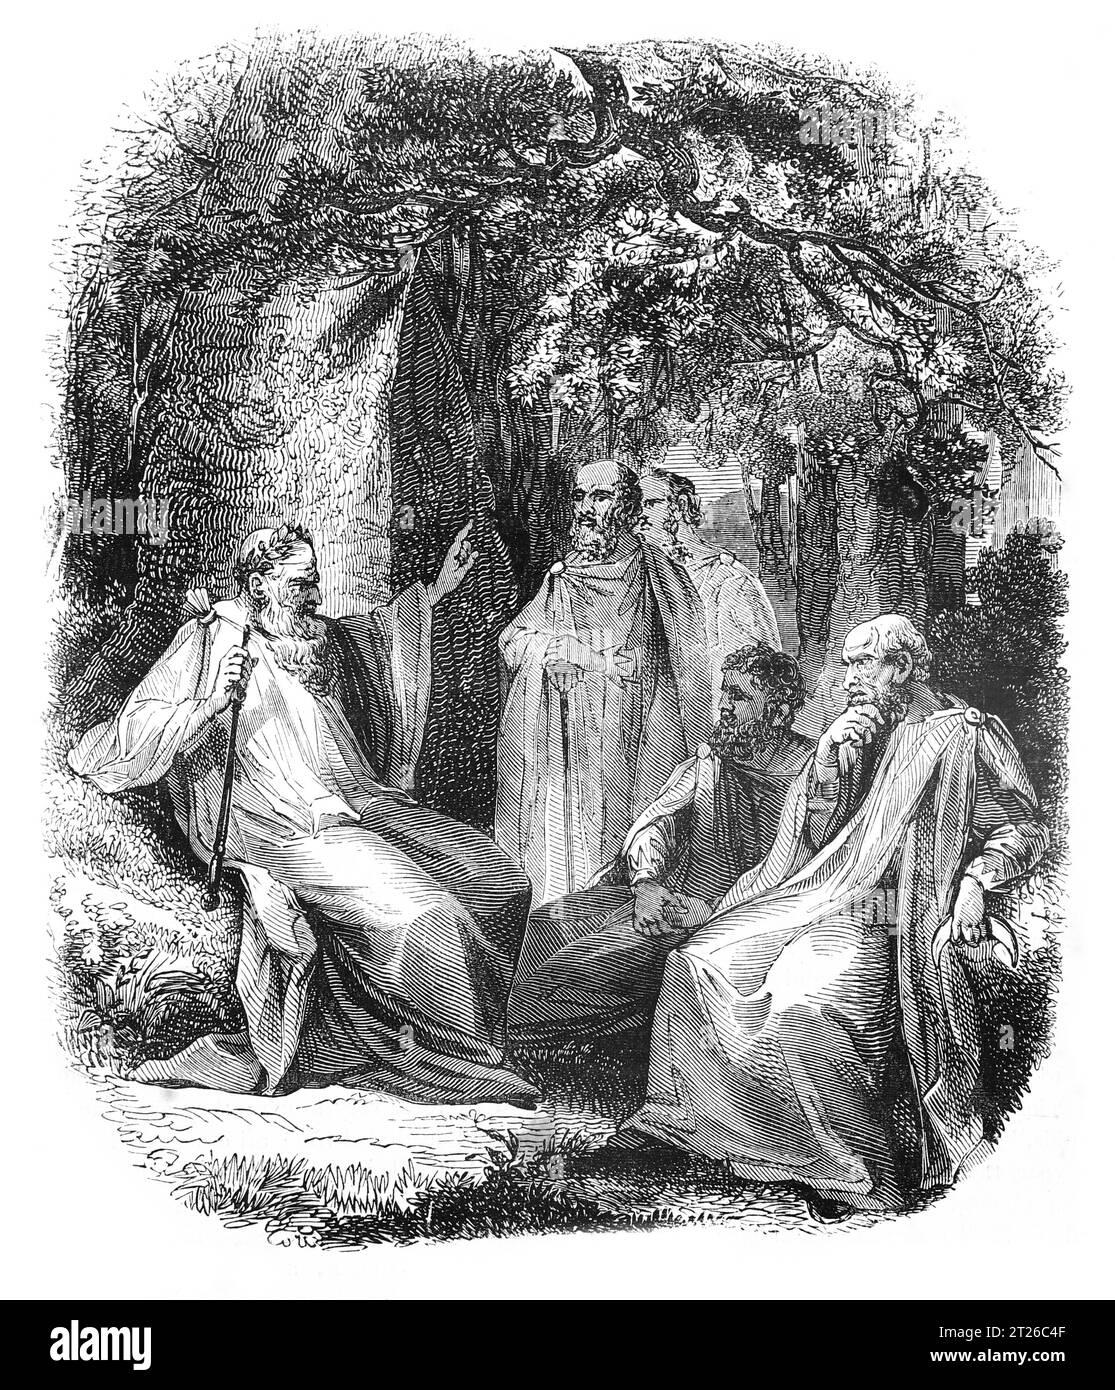 Arch-druida y druidas. Ilustración en blanco y negro de la 'Vieja Inglaterra' publicada por James Sangster en 1860. Foto de stock